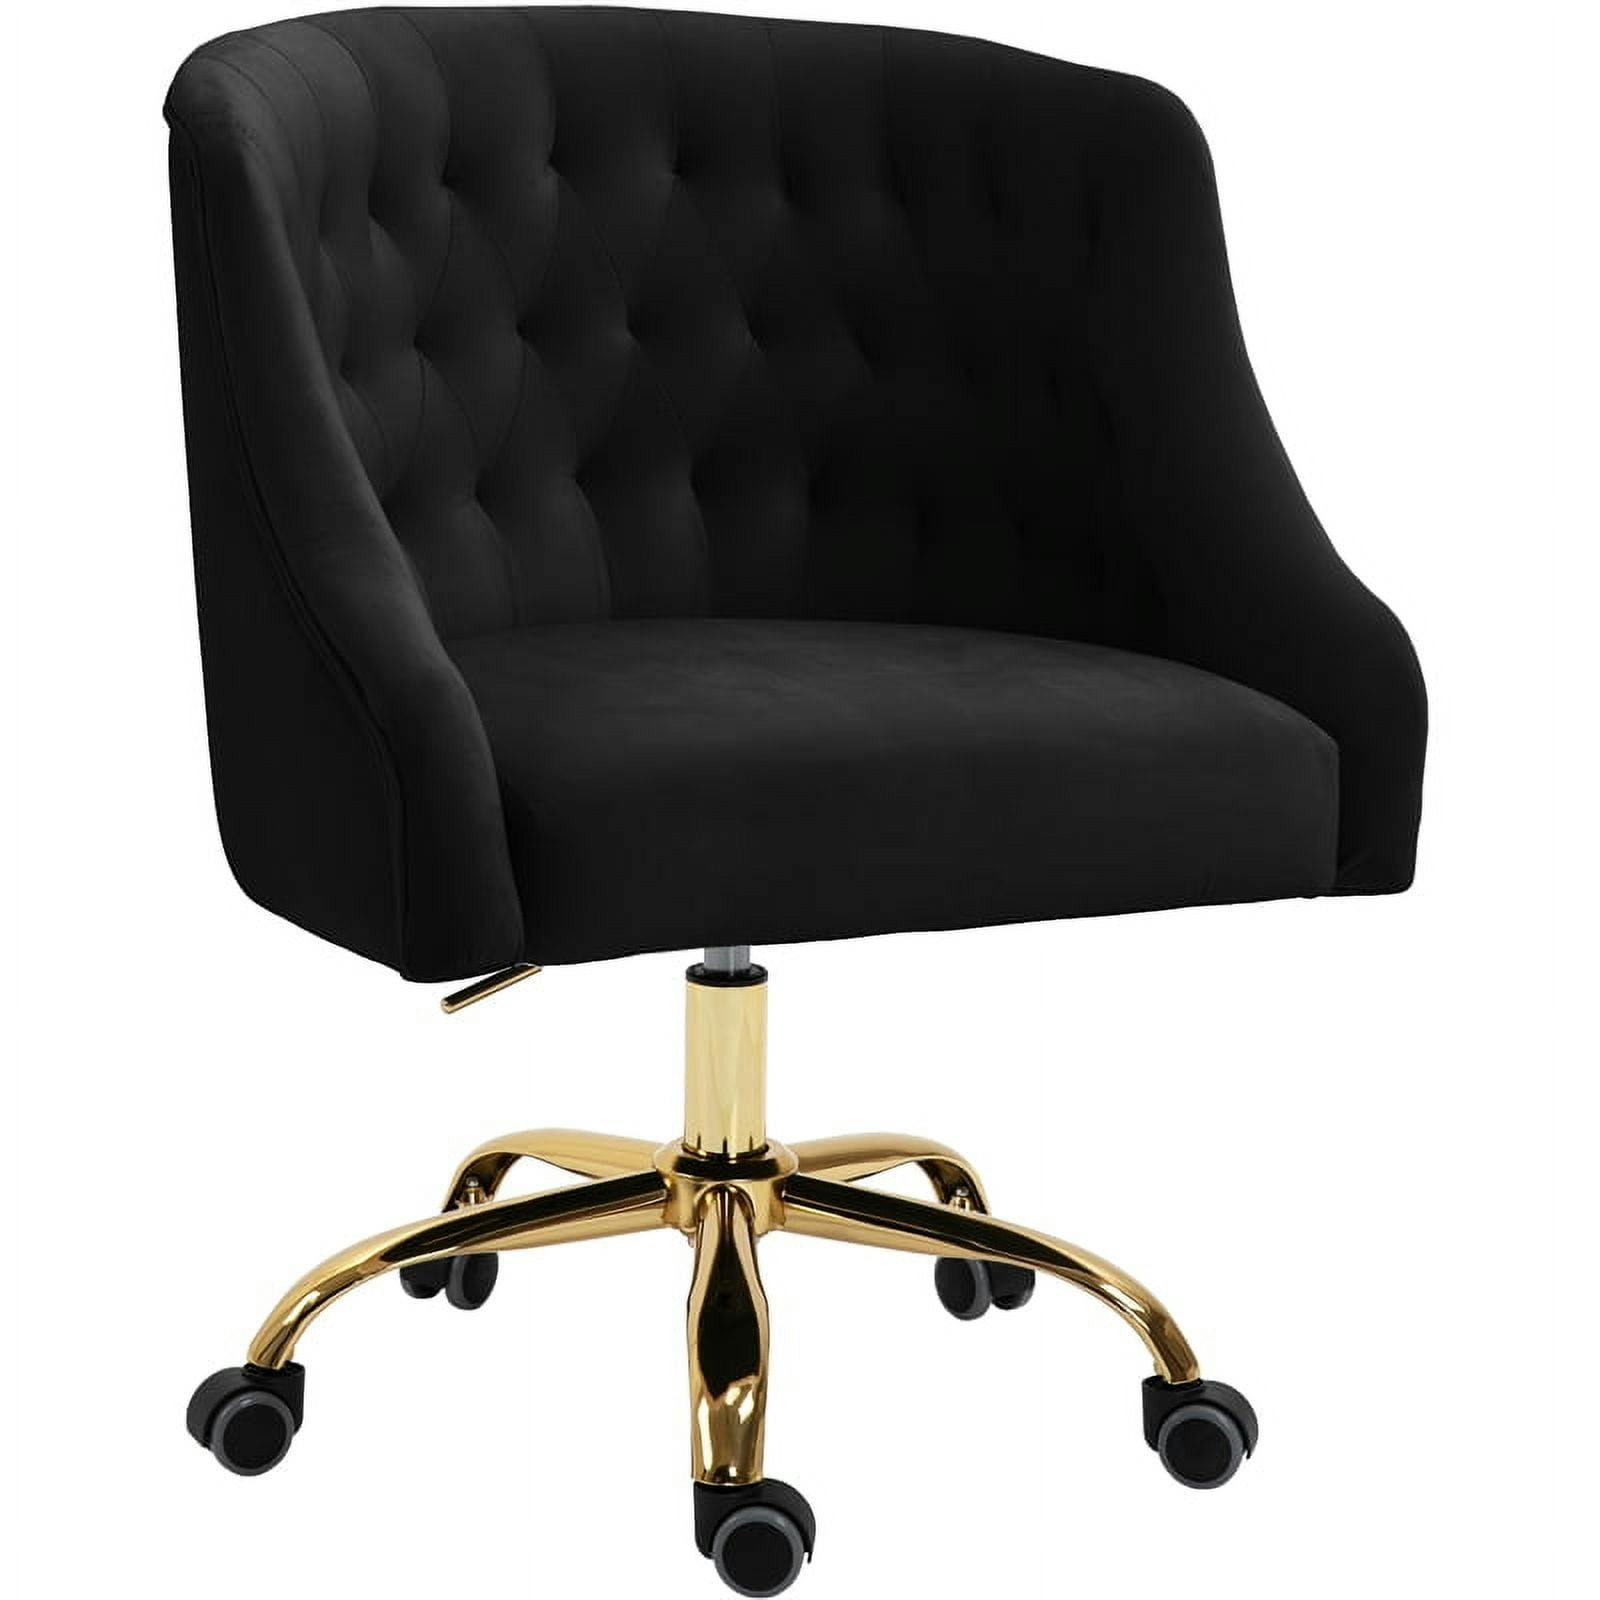 Arden 23" Swivel Adjustable Black Velvet Office Chair with Gold Base